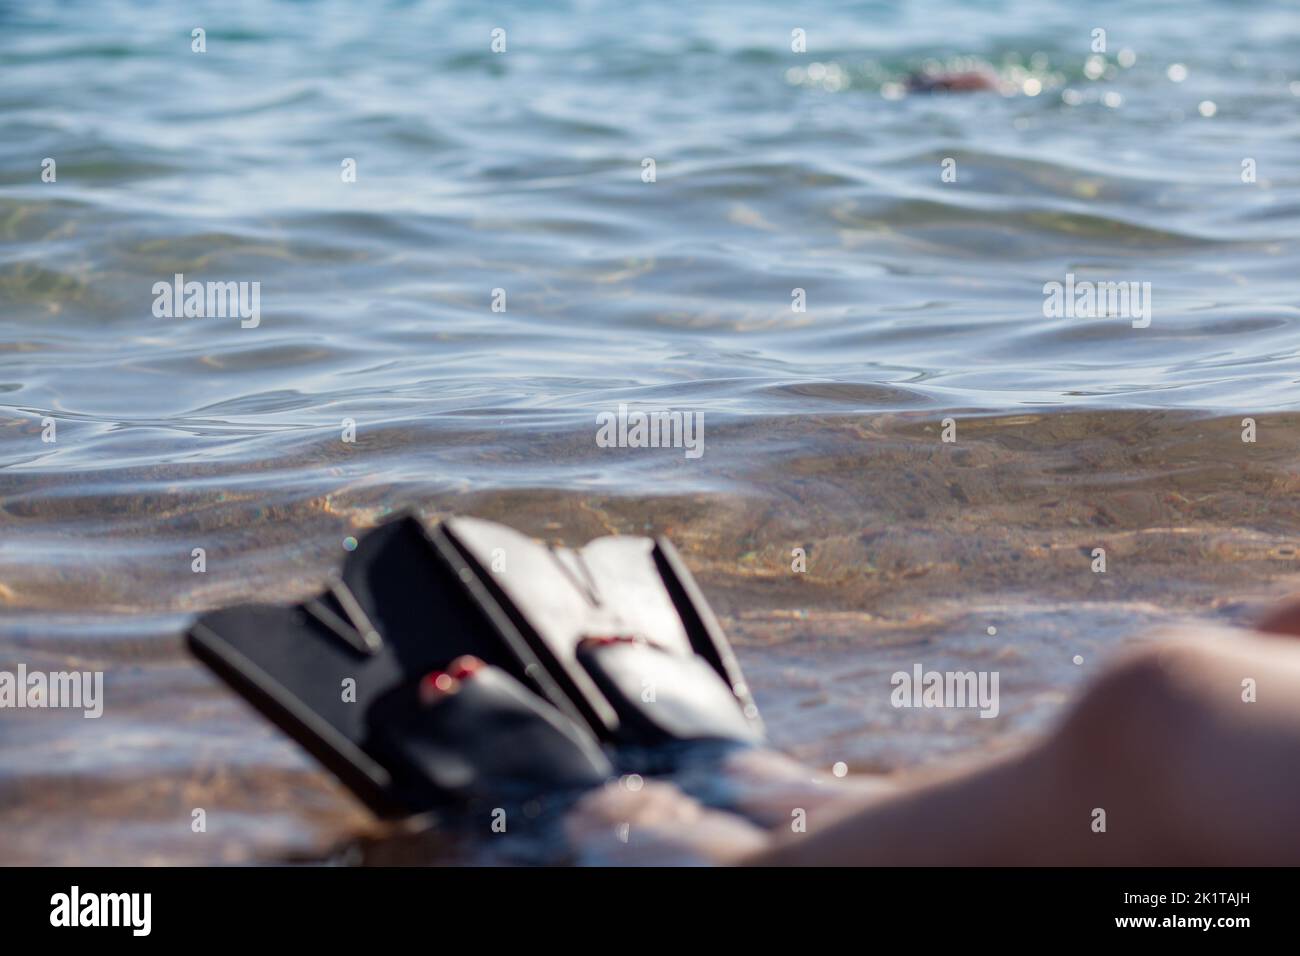 Eine Frau in schwarzen Flossen spritzt in der Nähe des Ufers. Lamellen ragen heraus Stockfoto